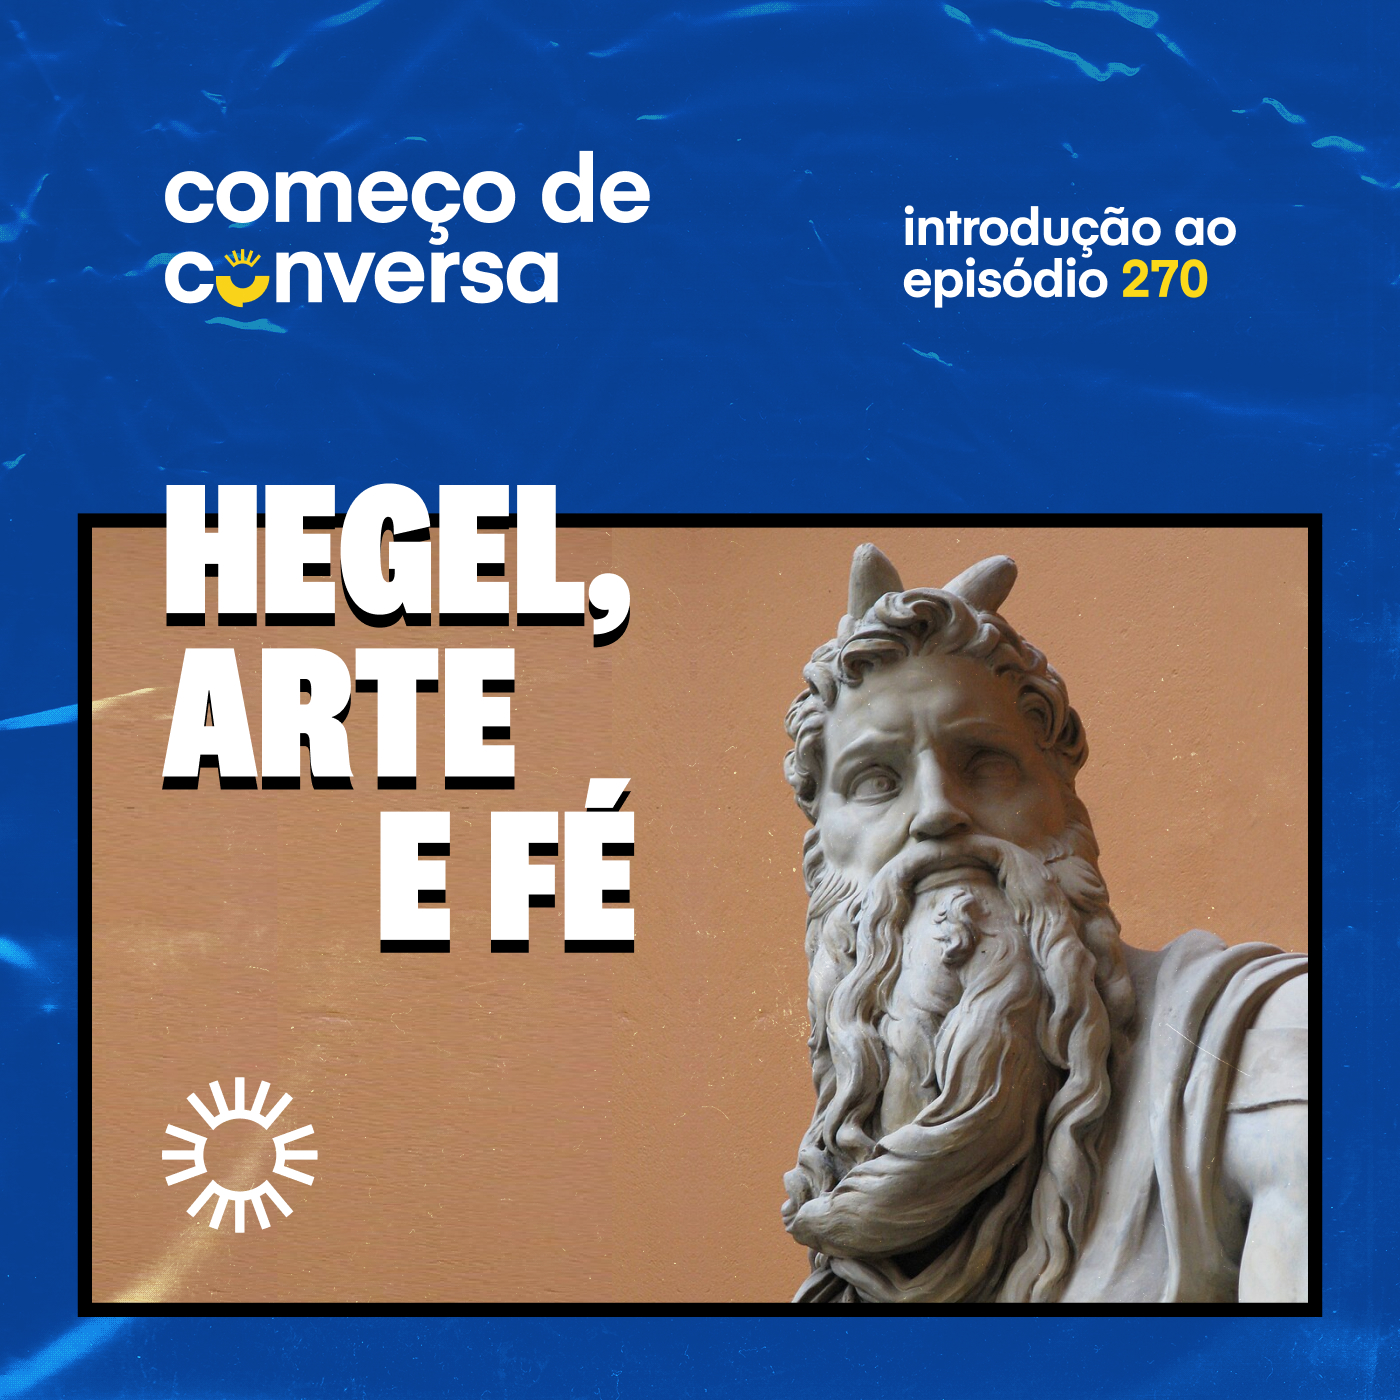 CDC: Hegel, arte e fé